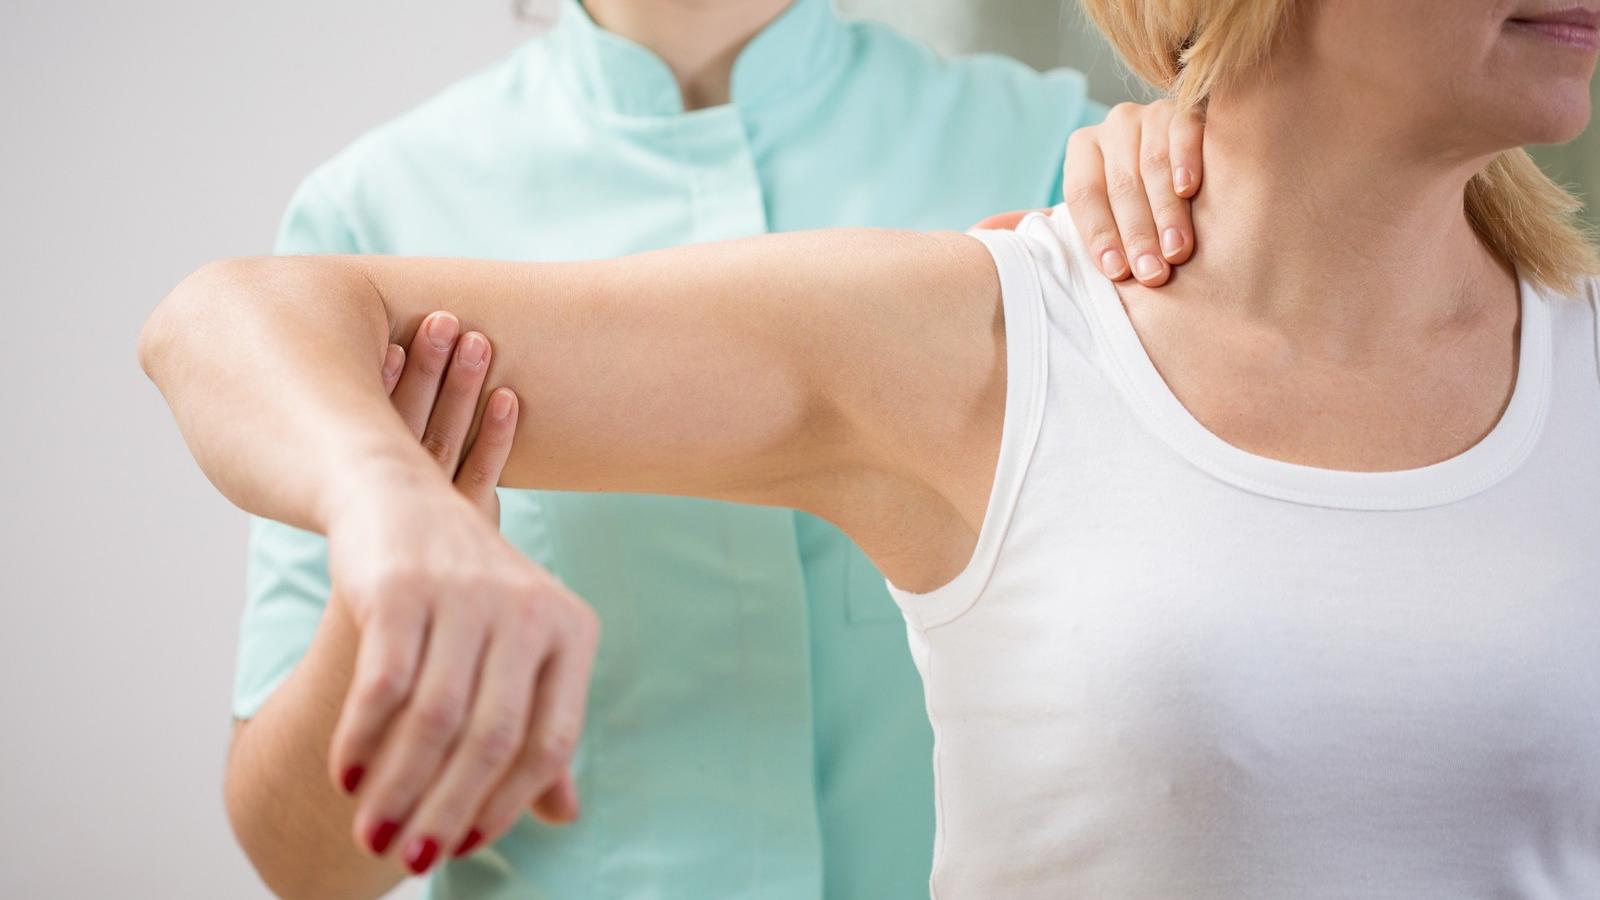 A csípőfájdalom kivizsgálása, kezelése és megszűntetése - Budai FájdalomKözpont